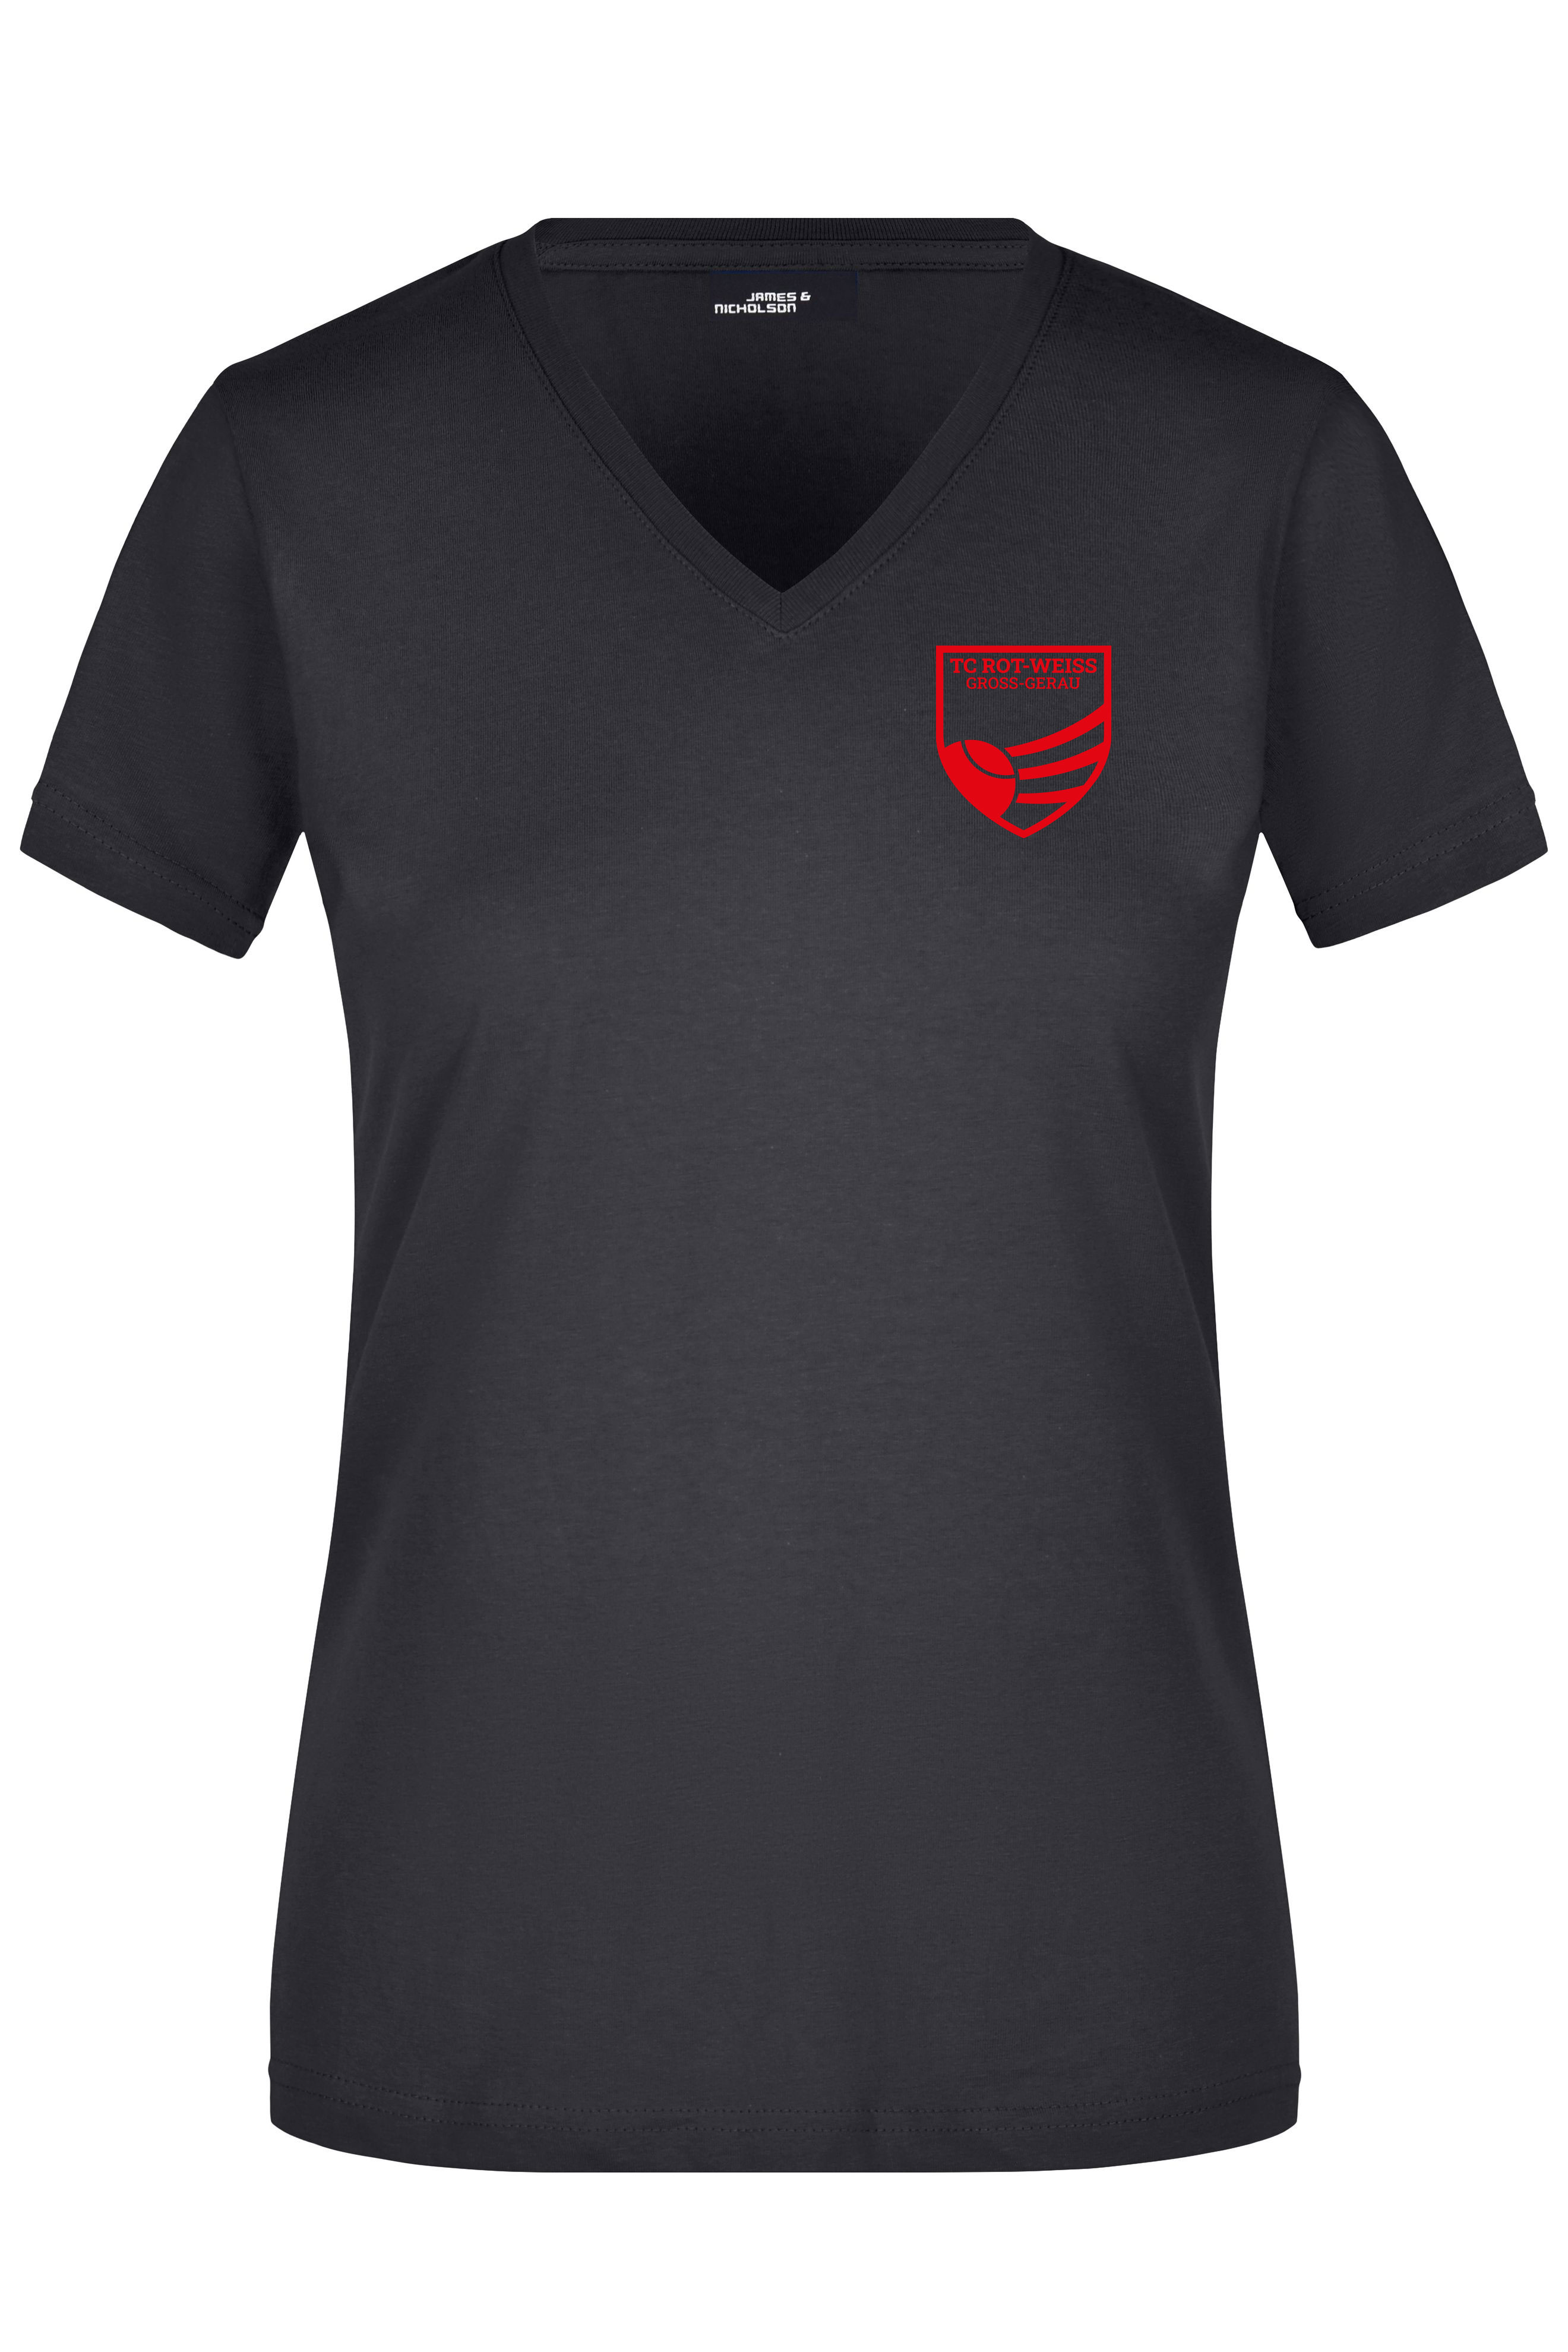 TC Rot-Weiss - Vorteil GG - Girly T-Shirt rot auf schwarz